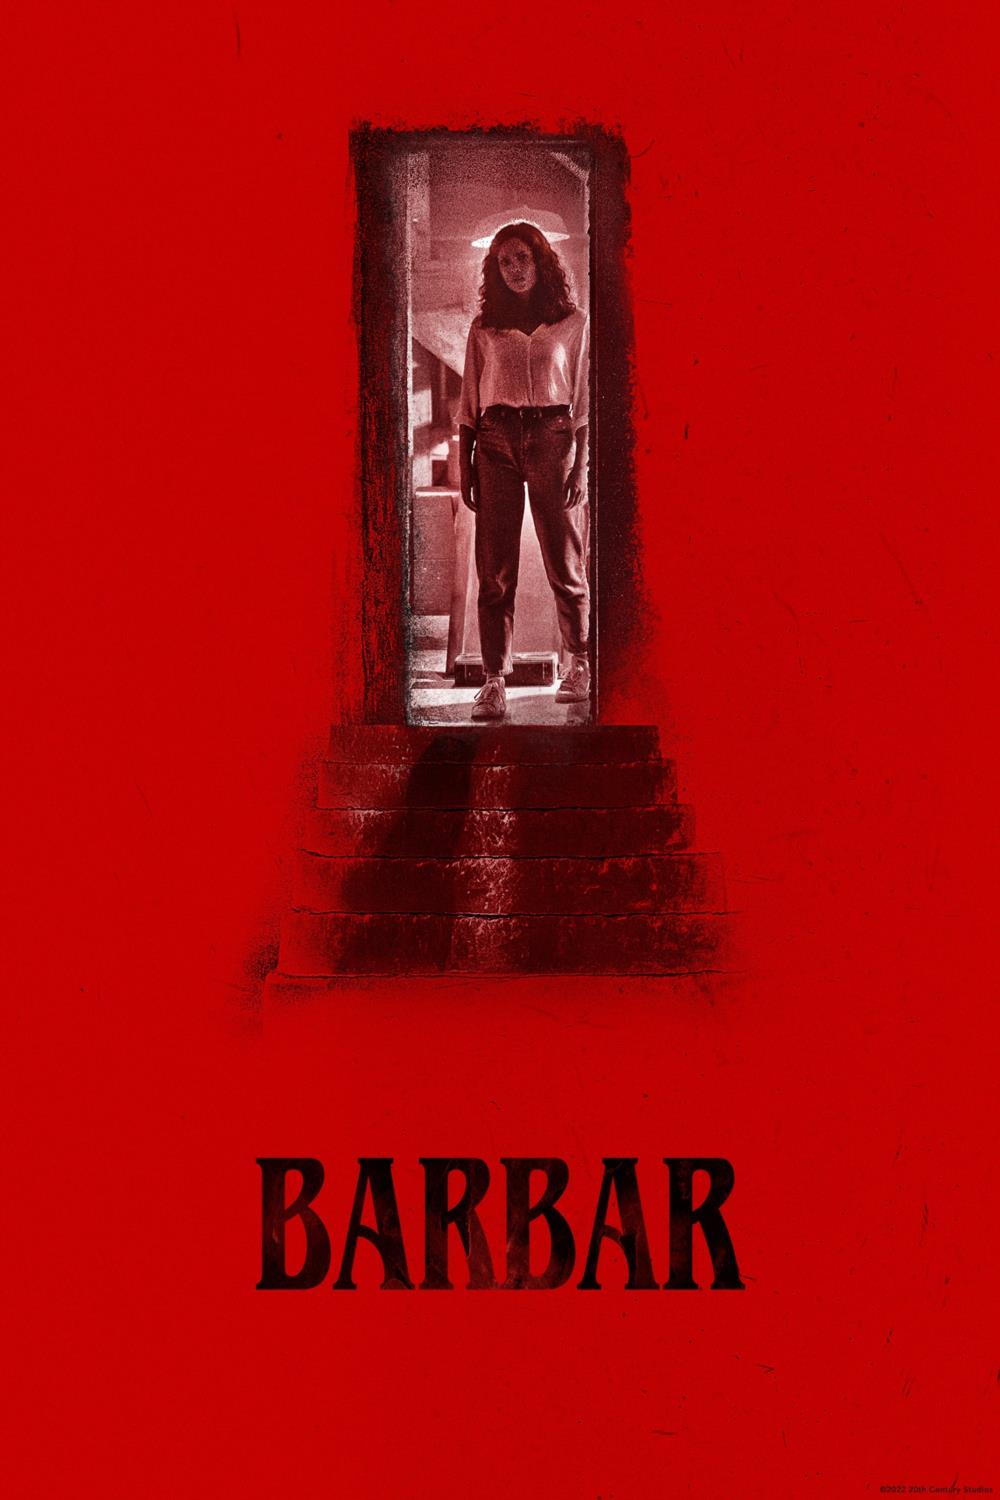 Stiahni si Filmy s titulkama Barbar / Barbarian (2022)[WebRip][2160p] = CSFD 74%